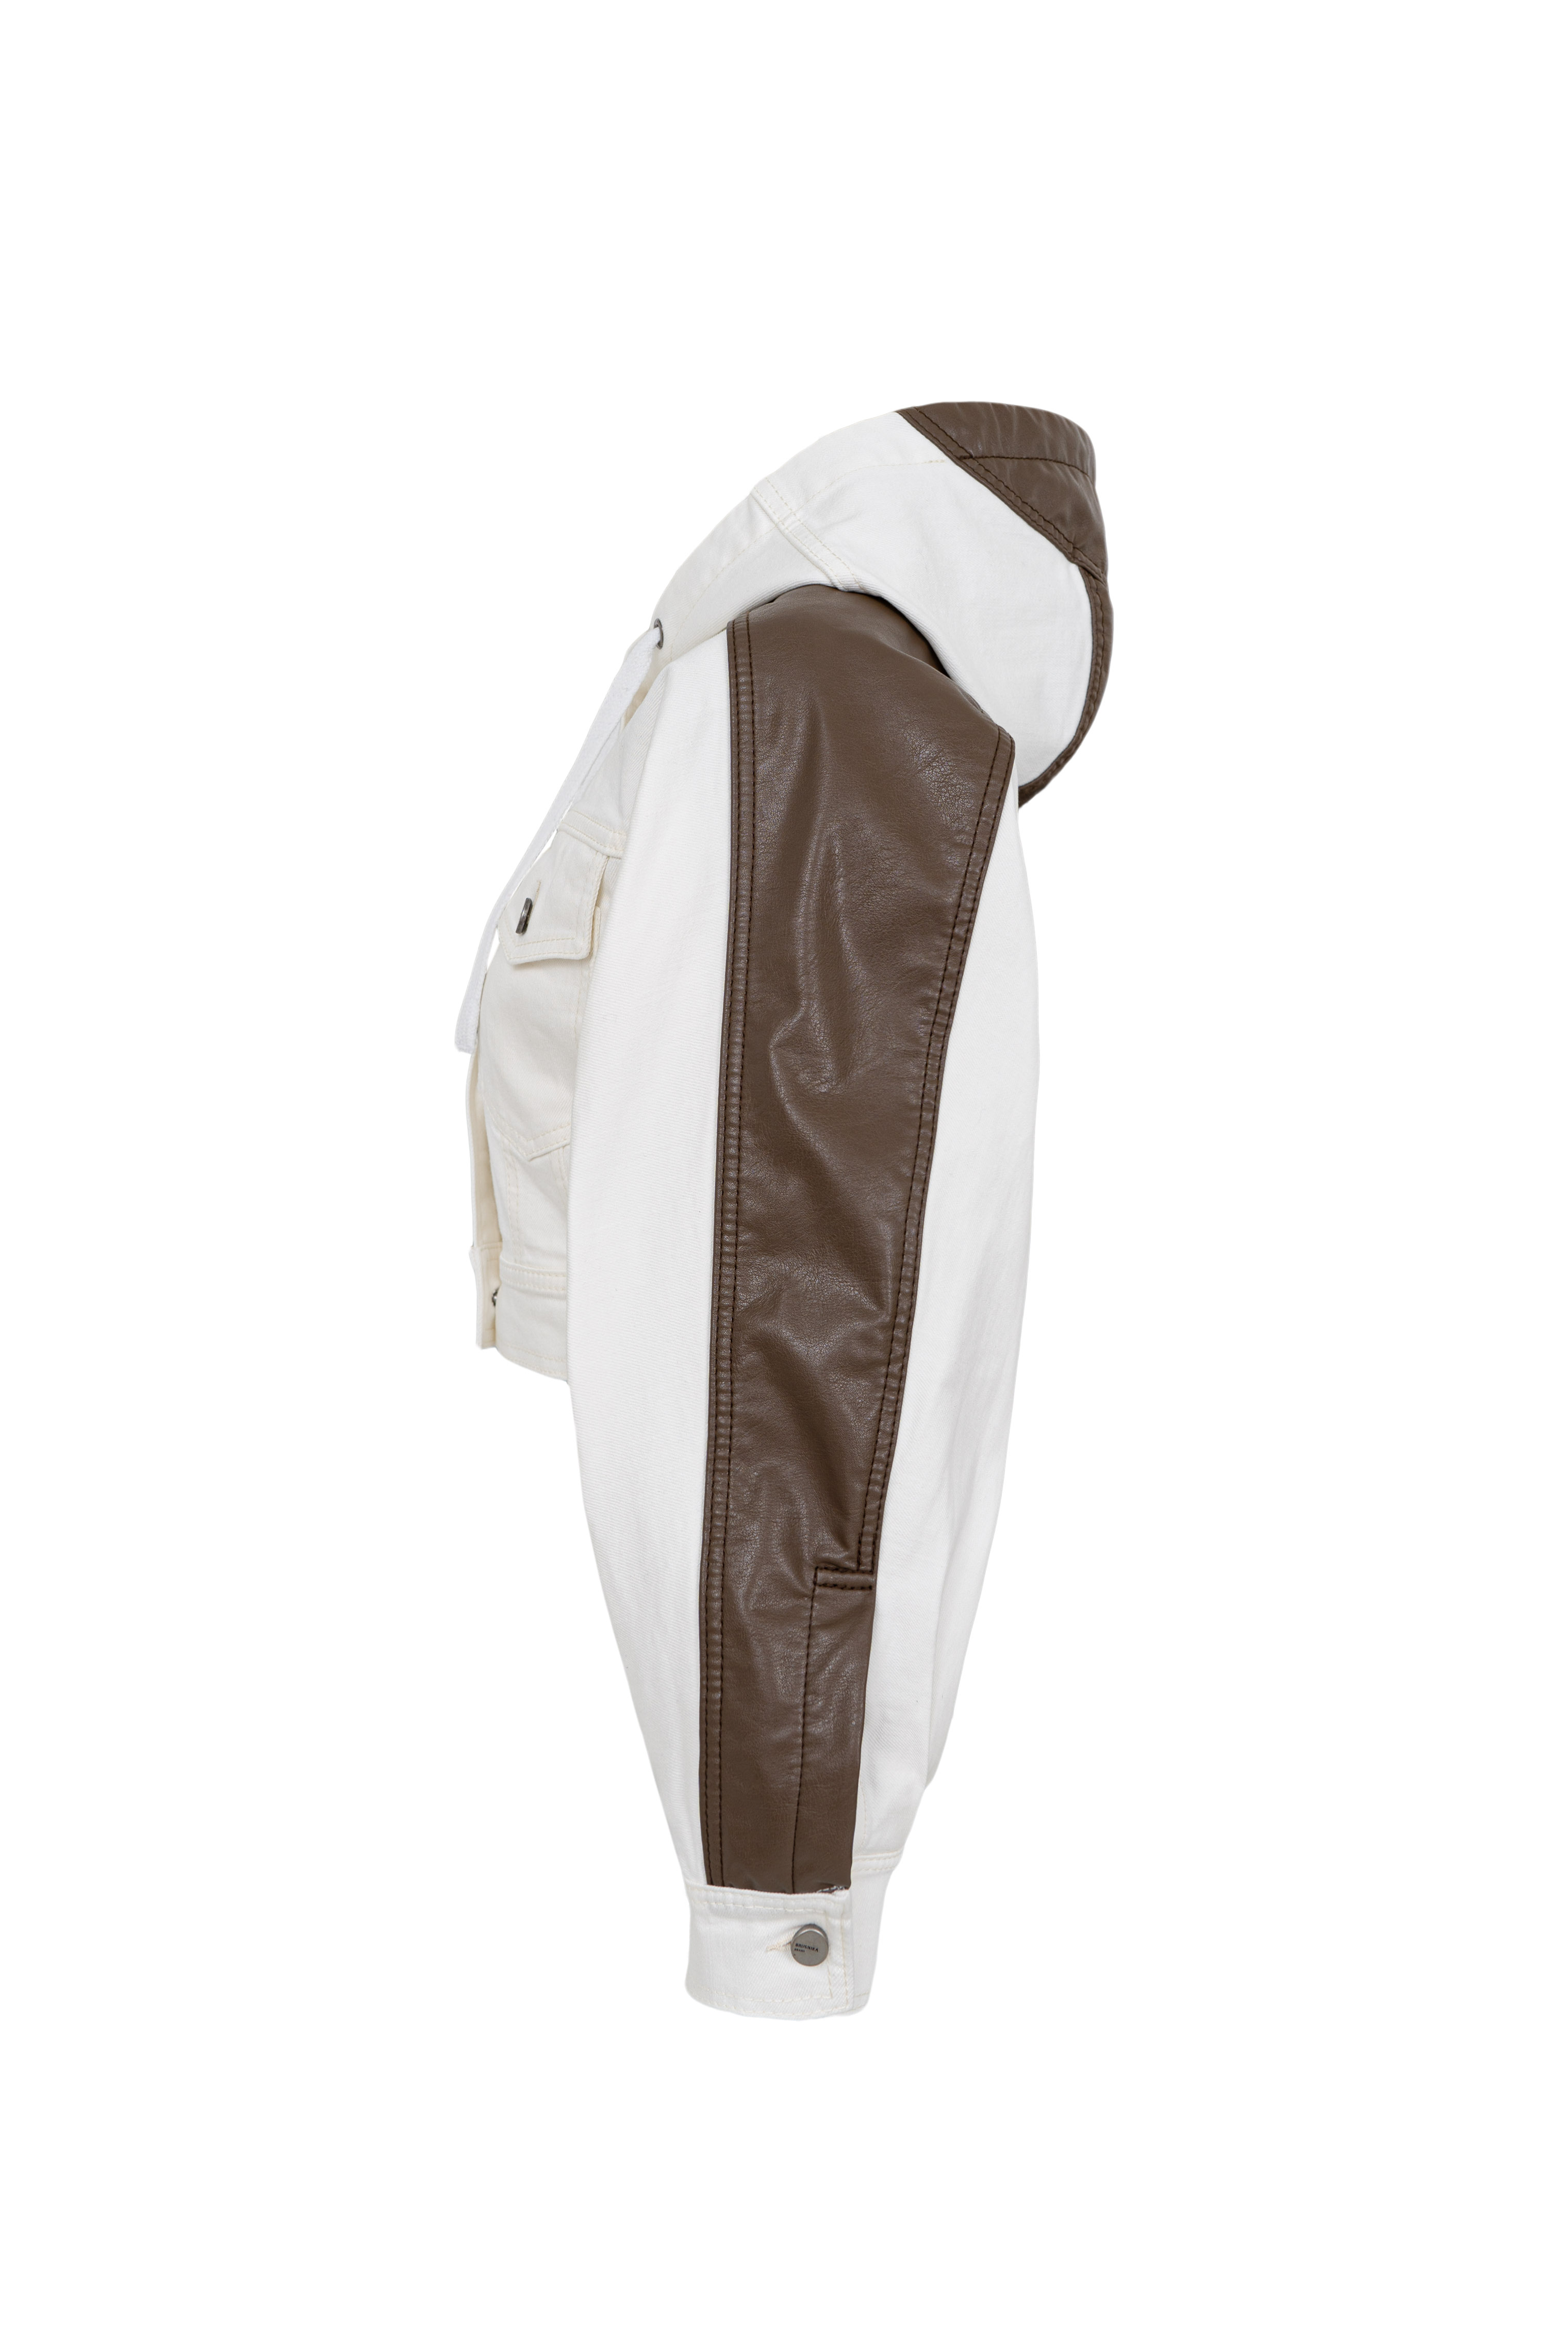 Jacket 4713-02 White from BRUSNiKA